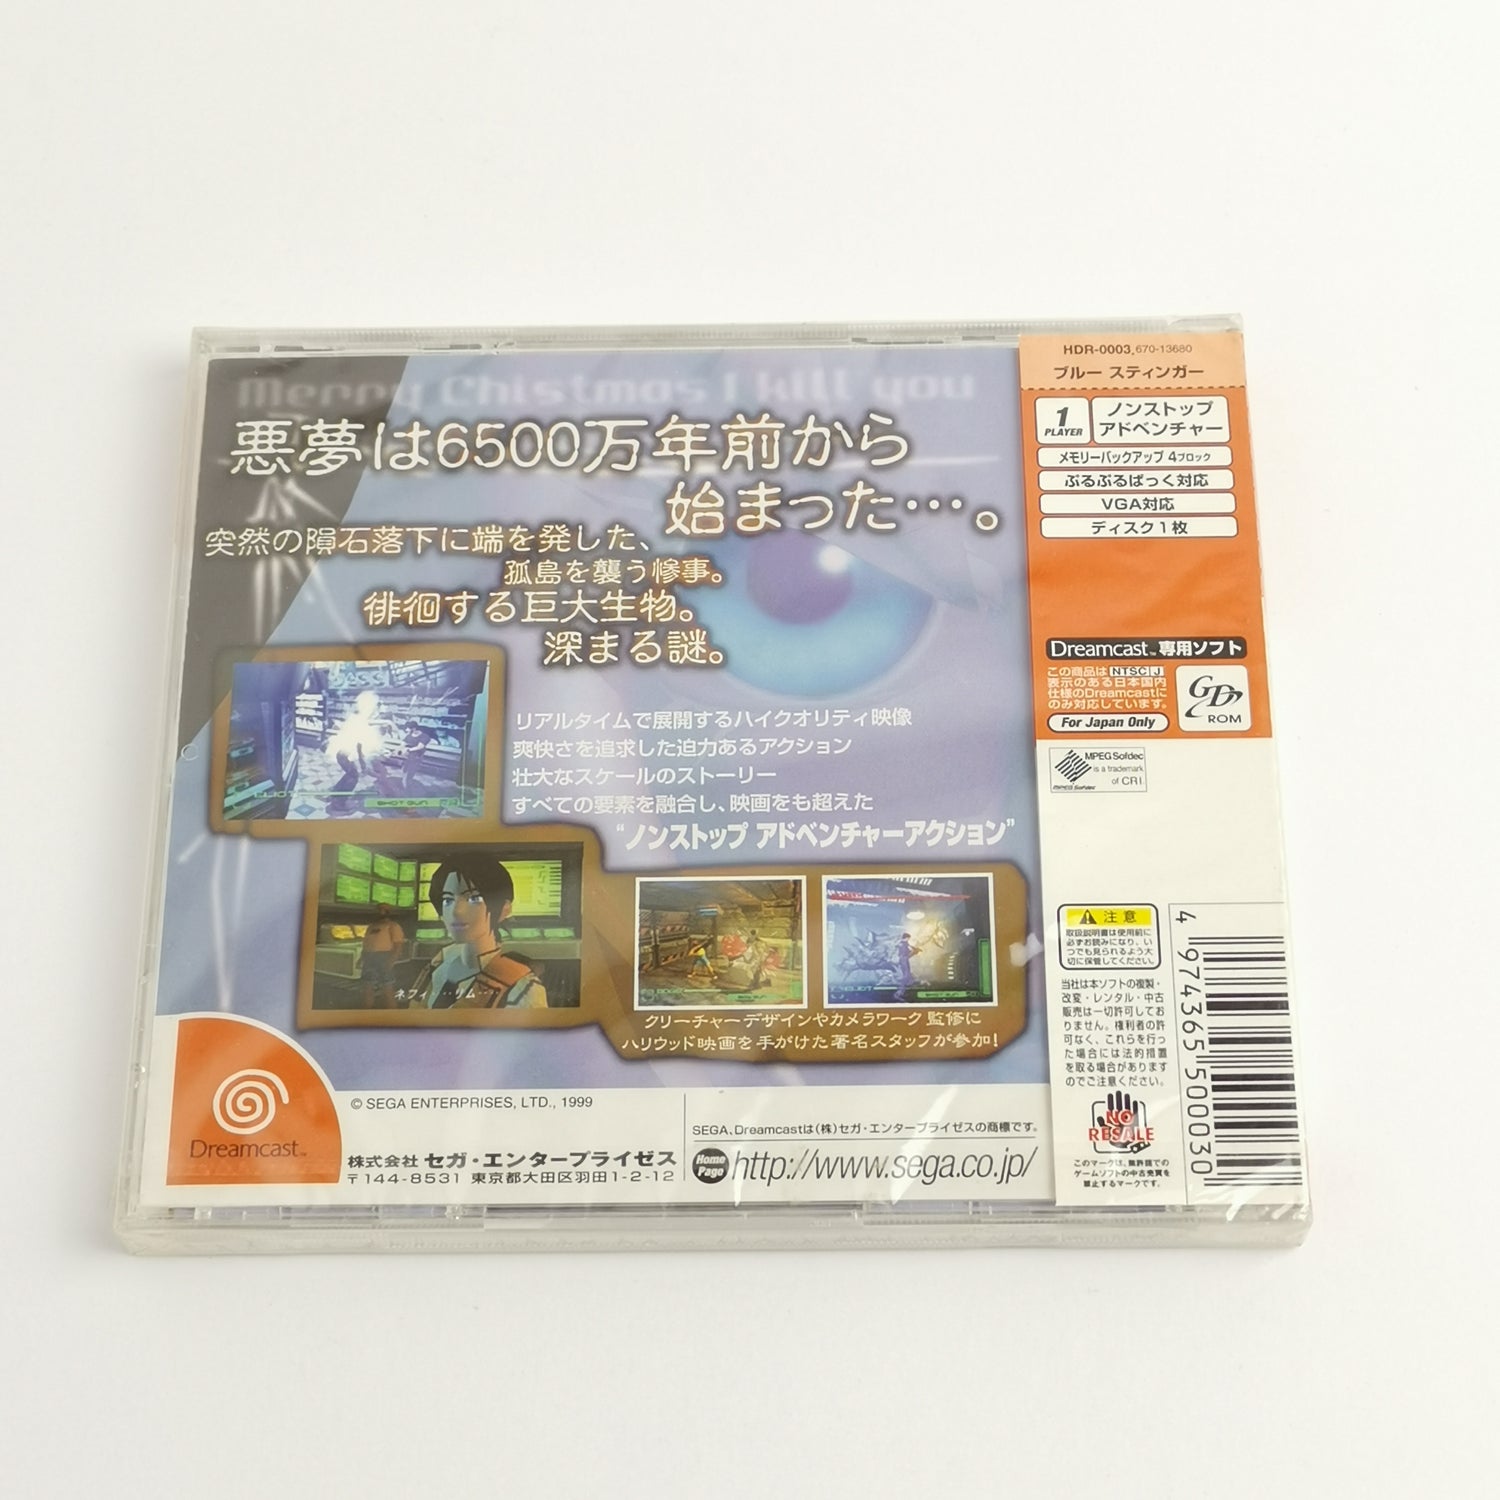 Japanese Sega Dreamcast game: Blue Stinger | NTSC-J OVP - New New Sealed